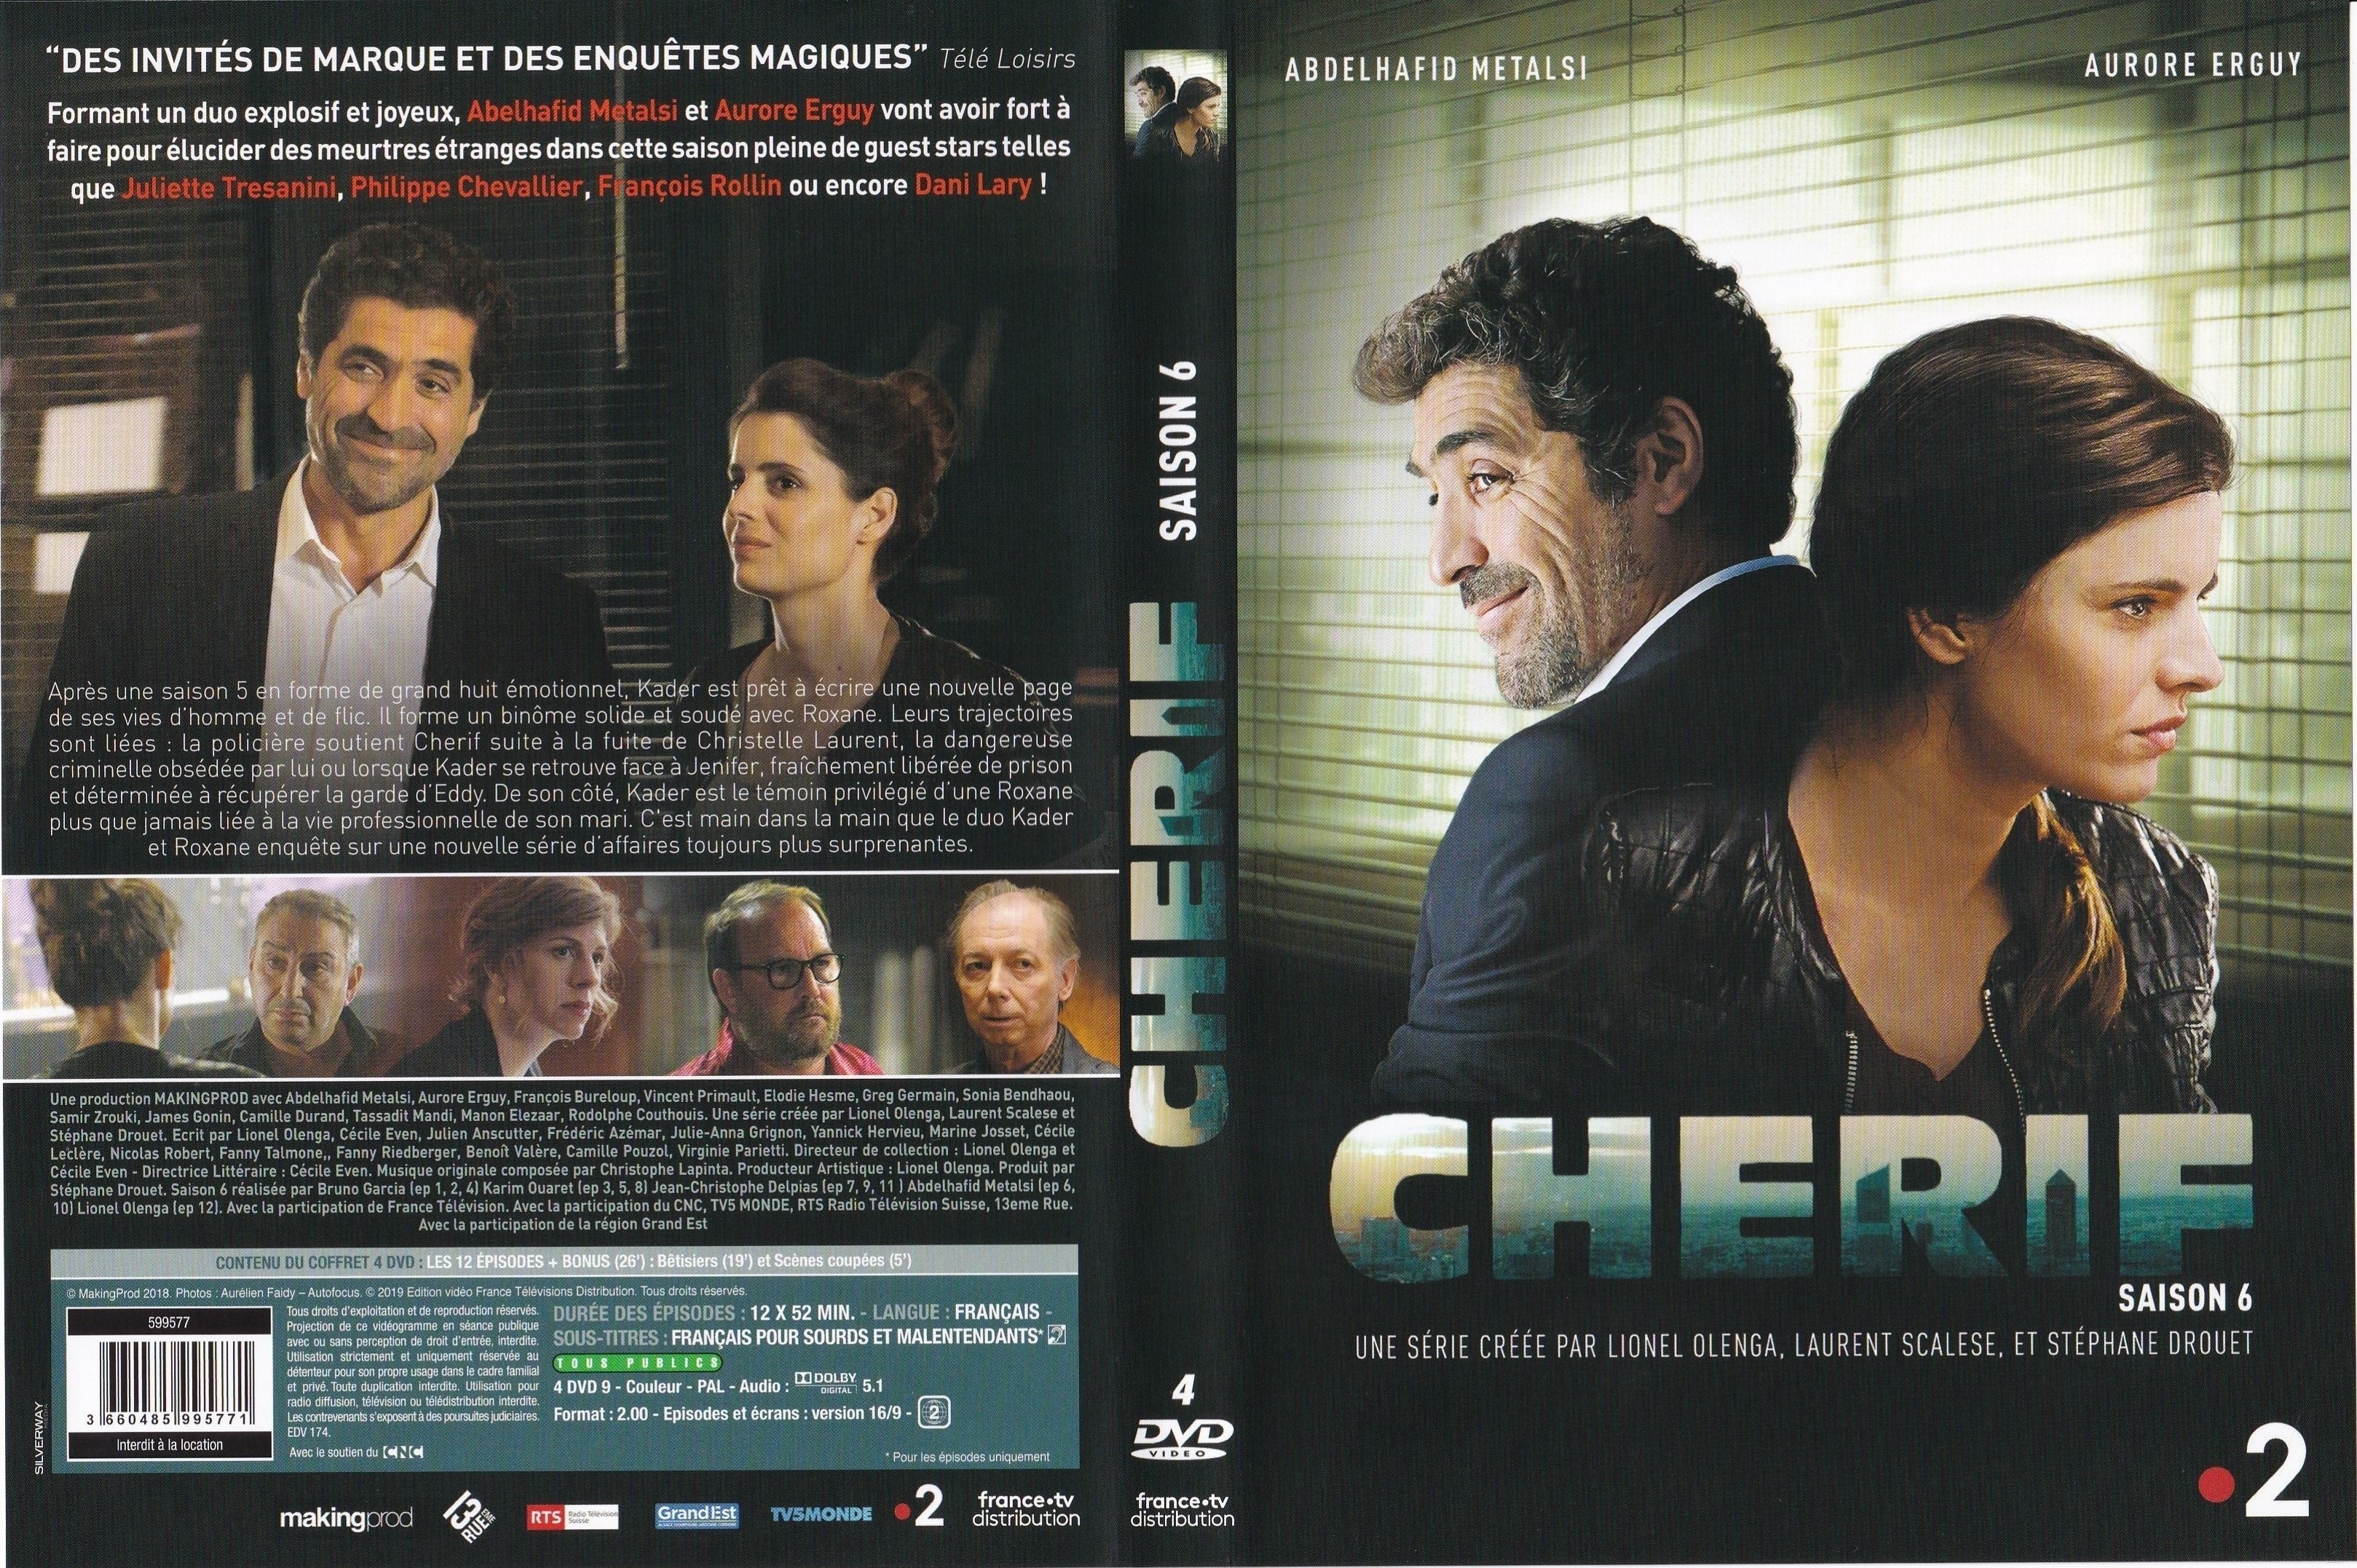 Jaquette DVD Cherif Saison 6